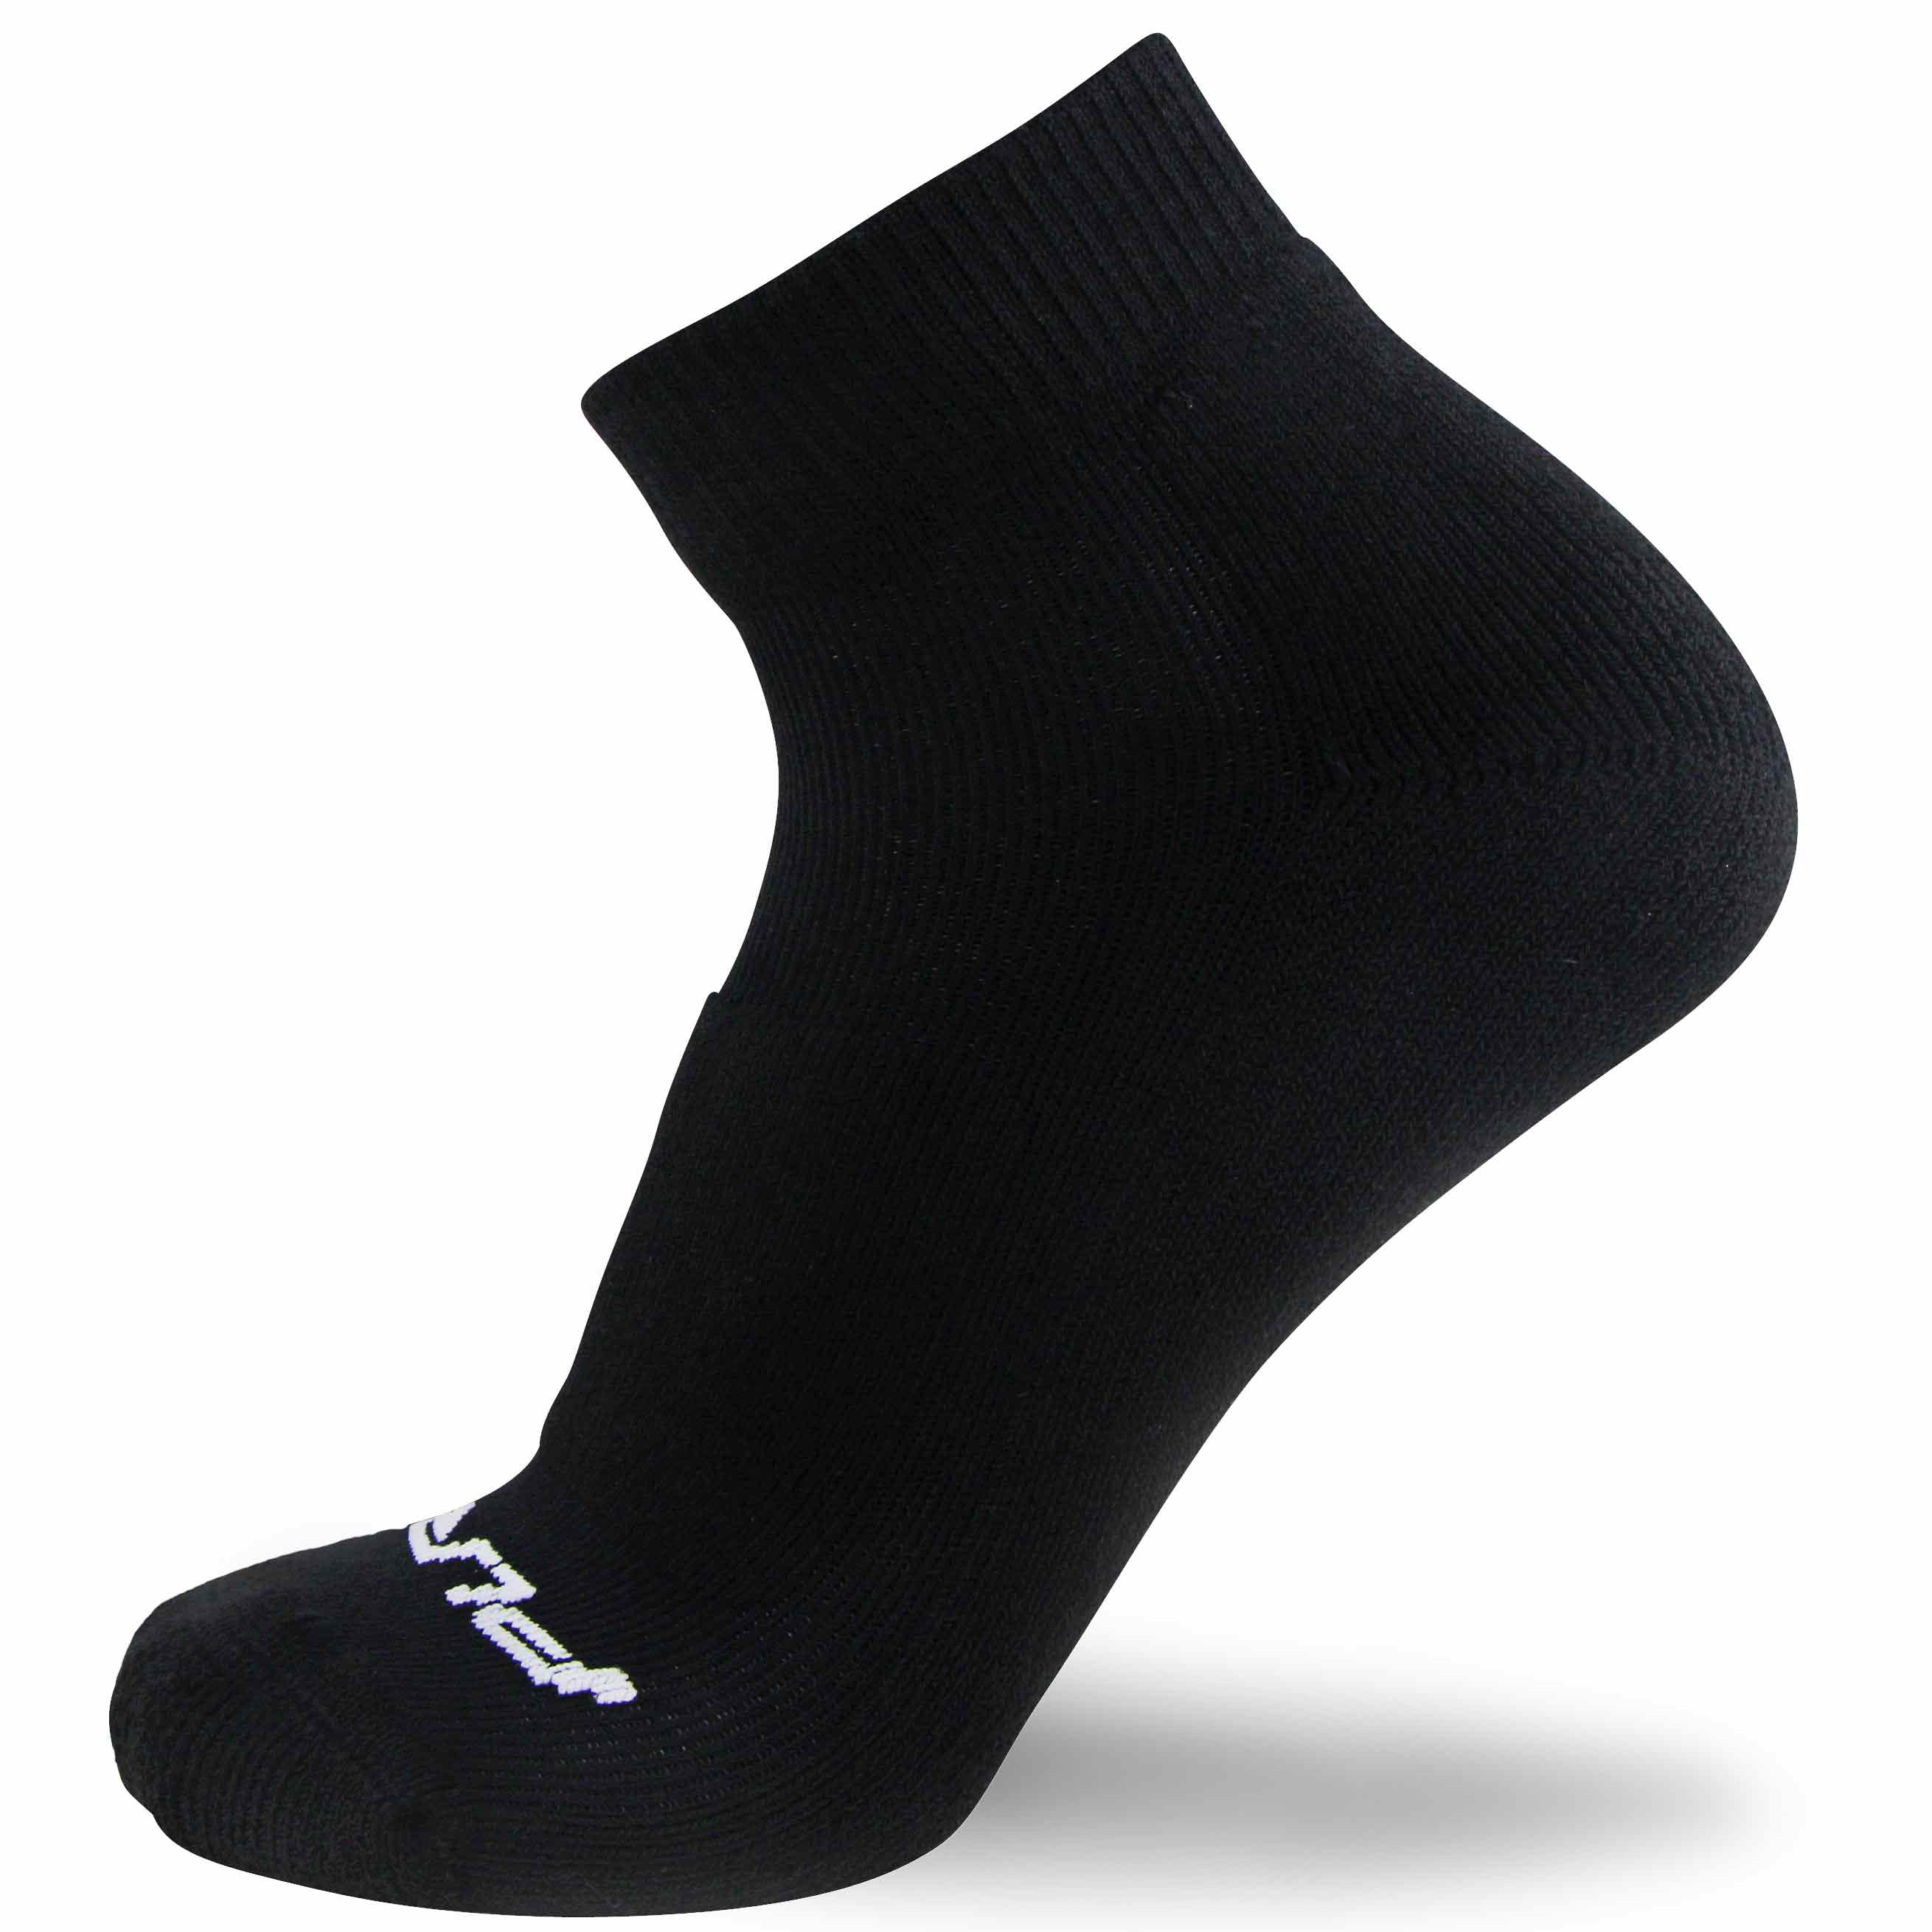 10 Pairs Ankle Nylon Socks for Women - Sheer Pantyhose Socks - Walmart.com